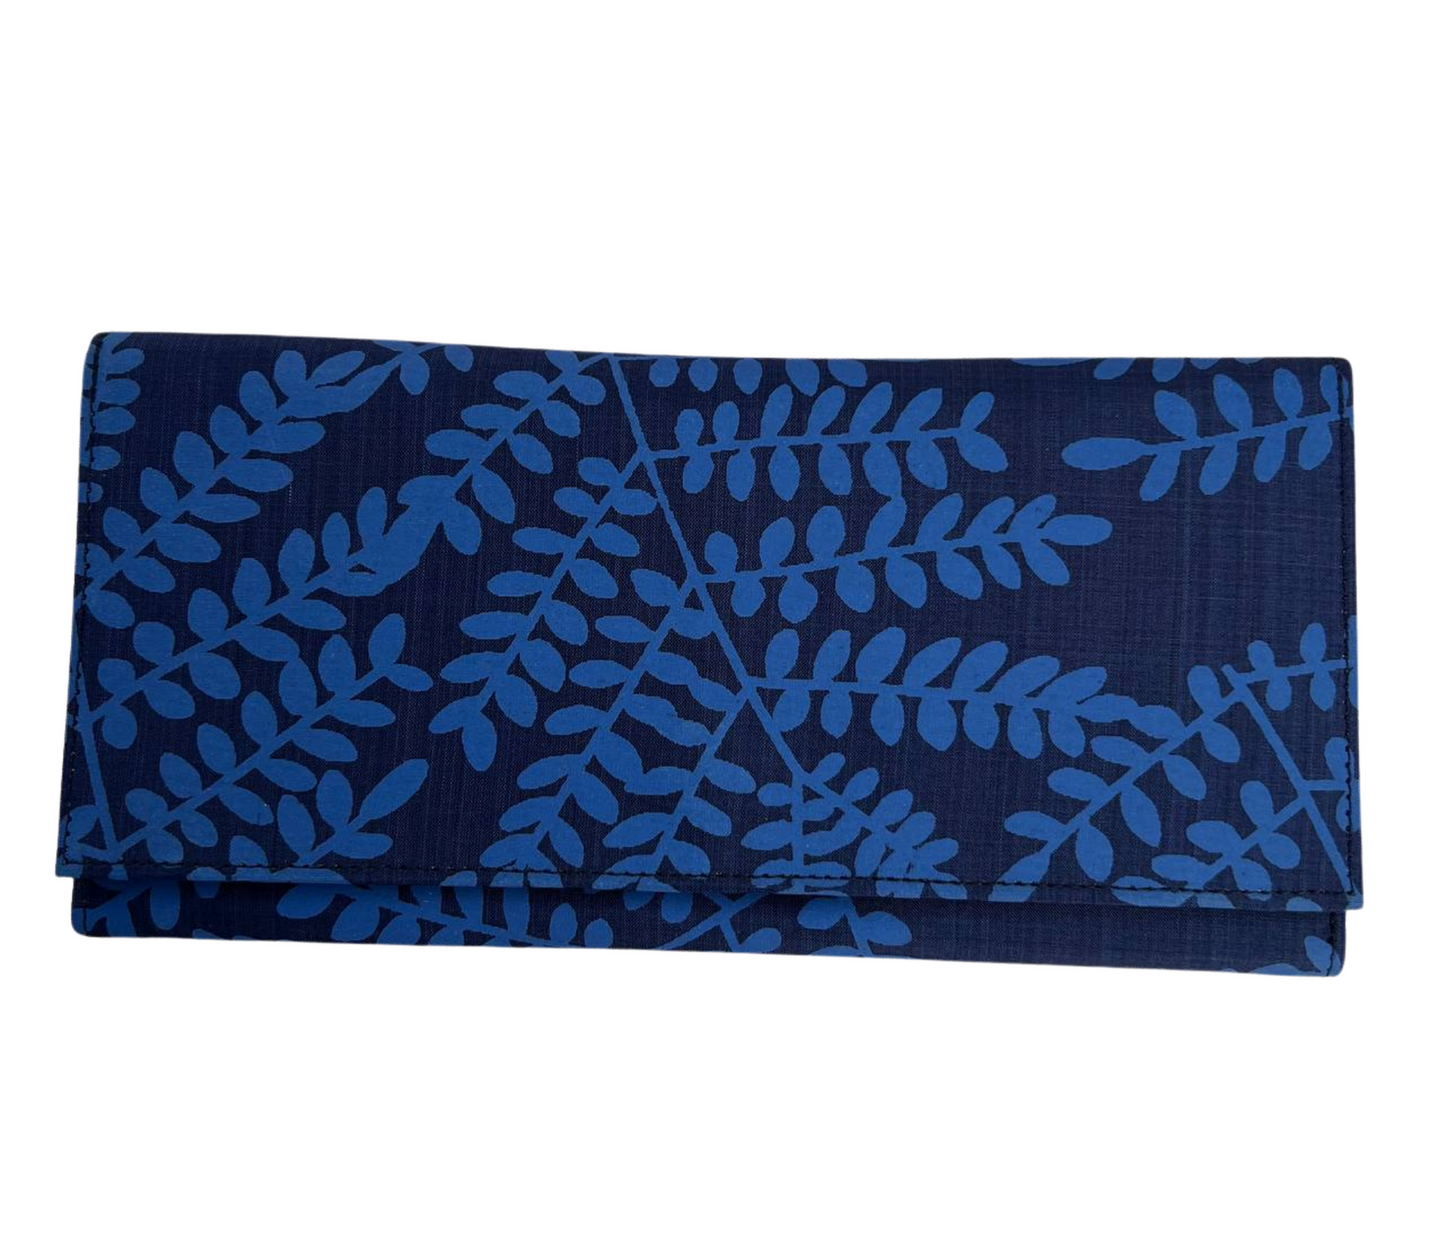 Pochette en soie cambodgienne bleu nuit aux motifs Acacia par Cambodia Art Scarf